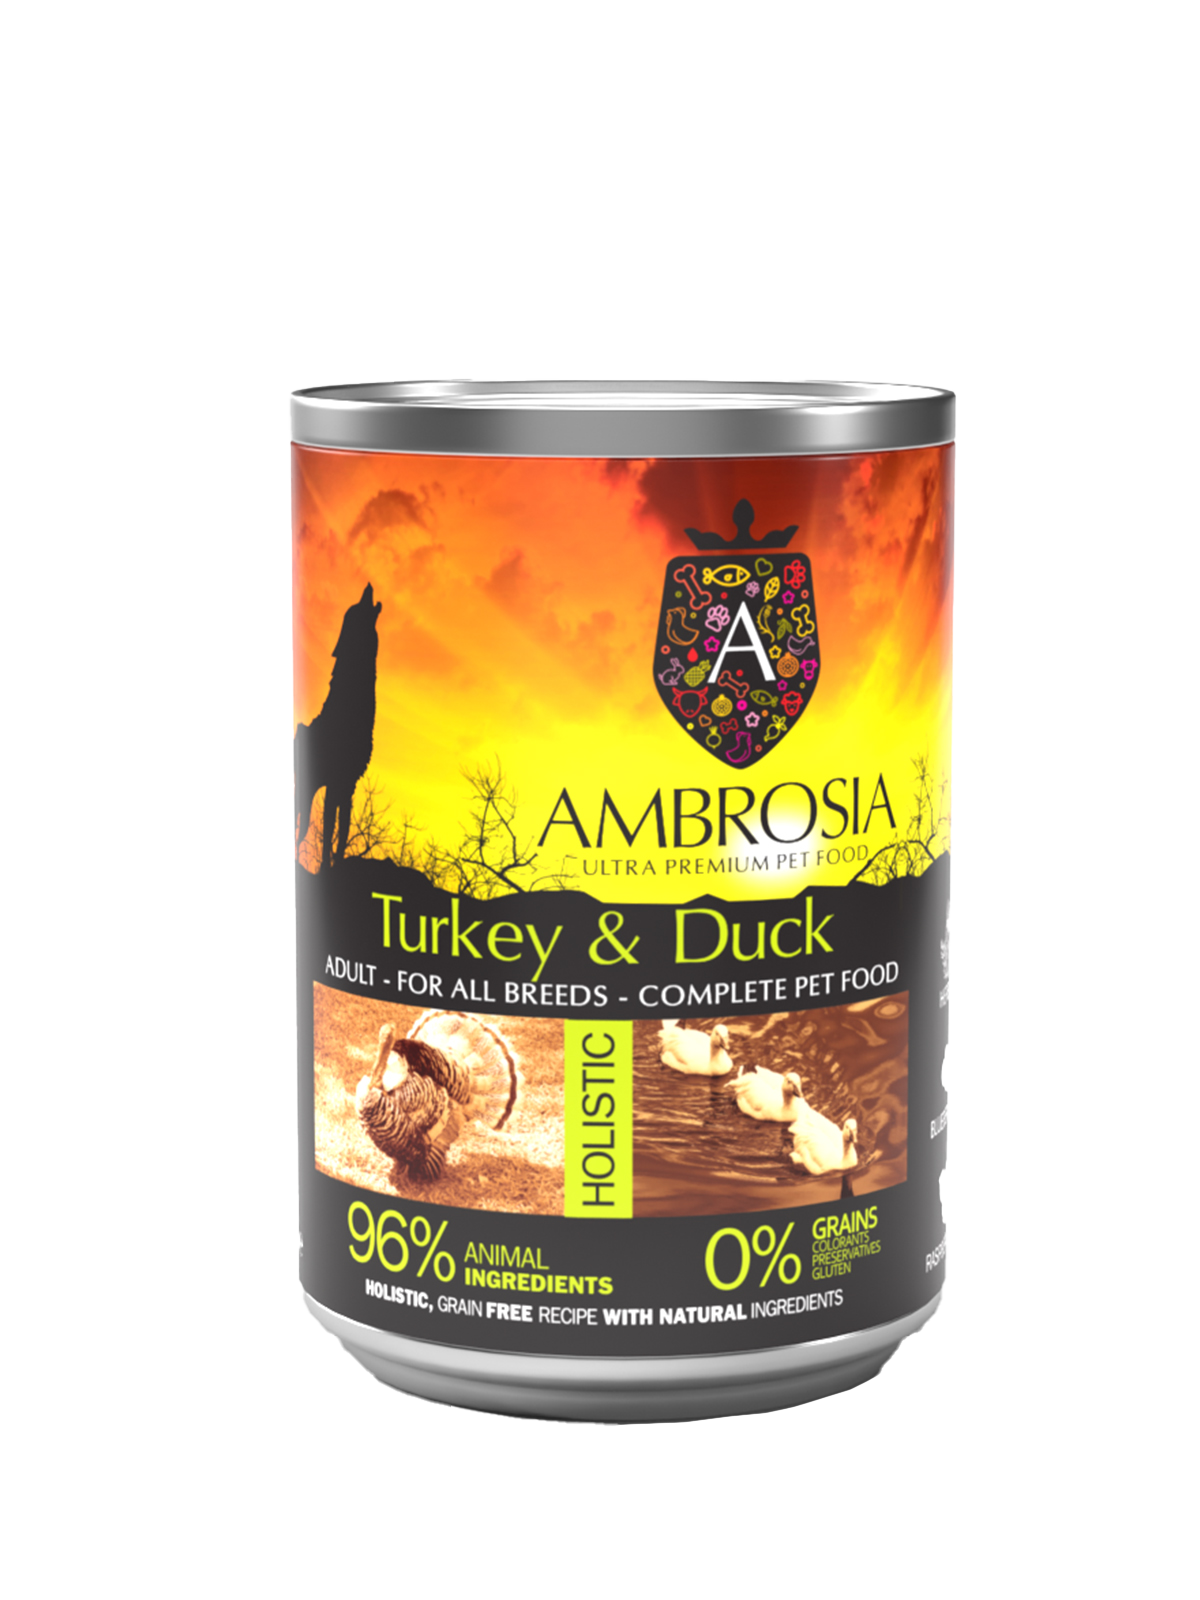 Turkey & Duck